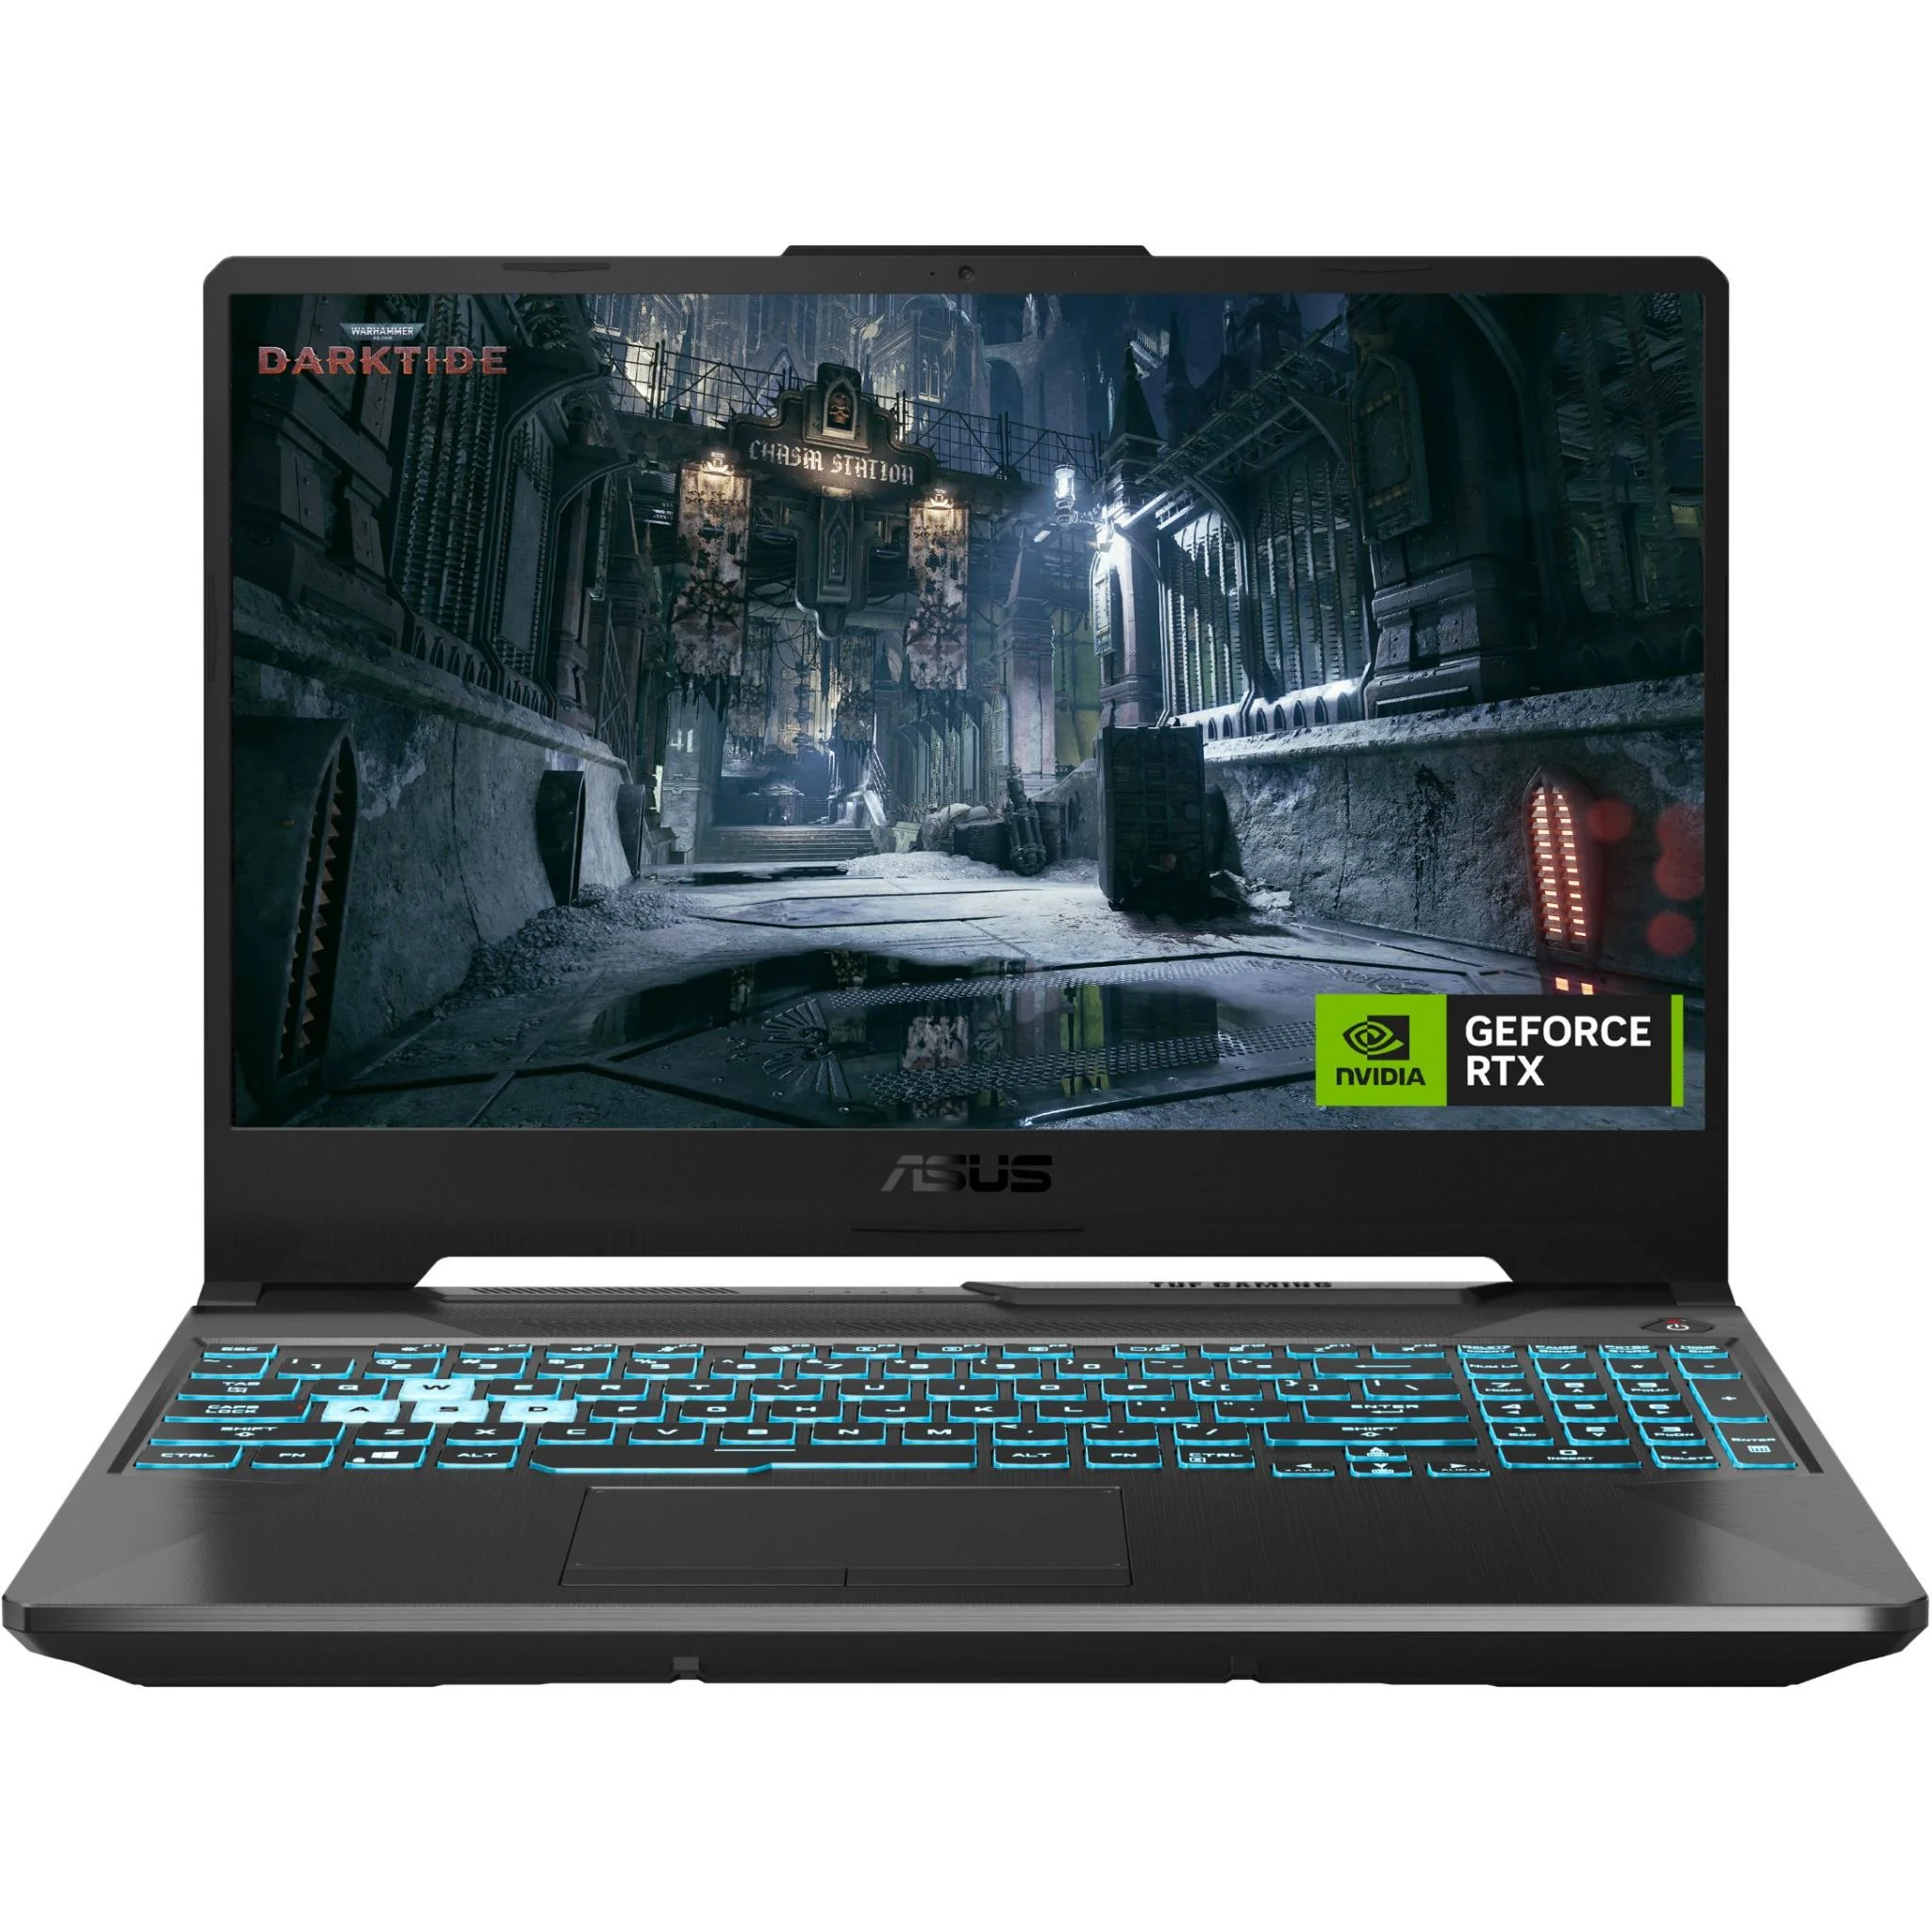 Asus TUF Gaming F15 15.6" FHD 144Hz Gaming Laptop (Intel I5/8GB)[GeForce RTX 2050]